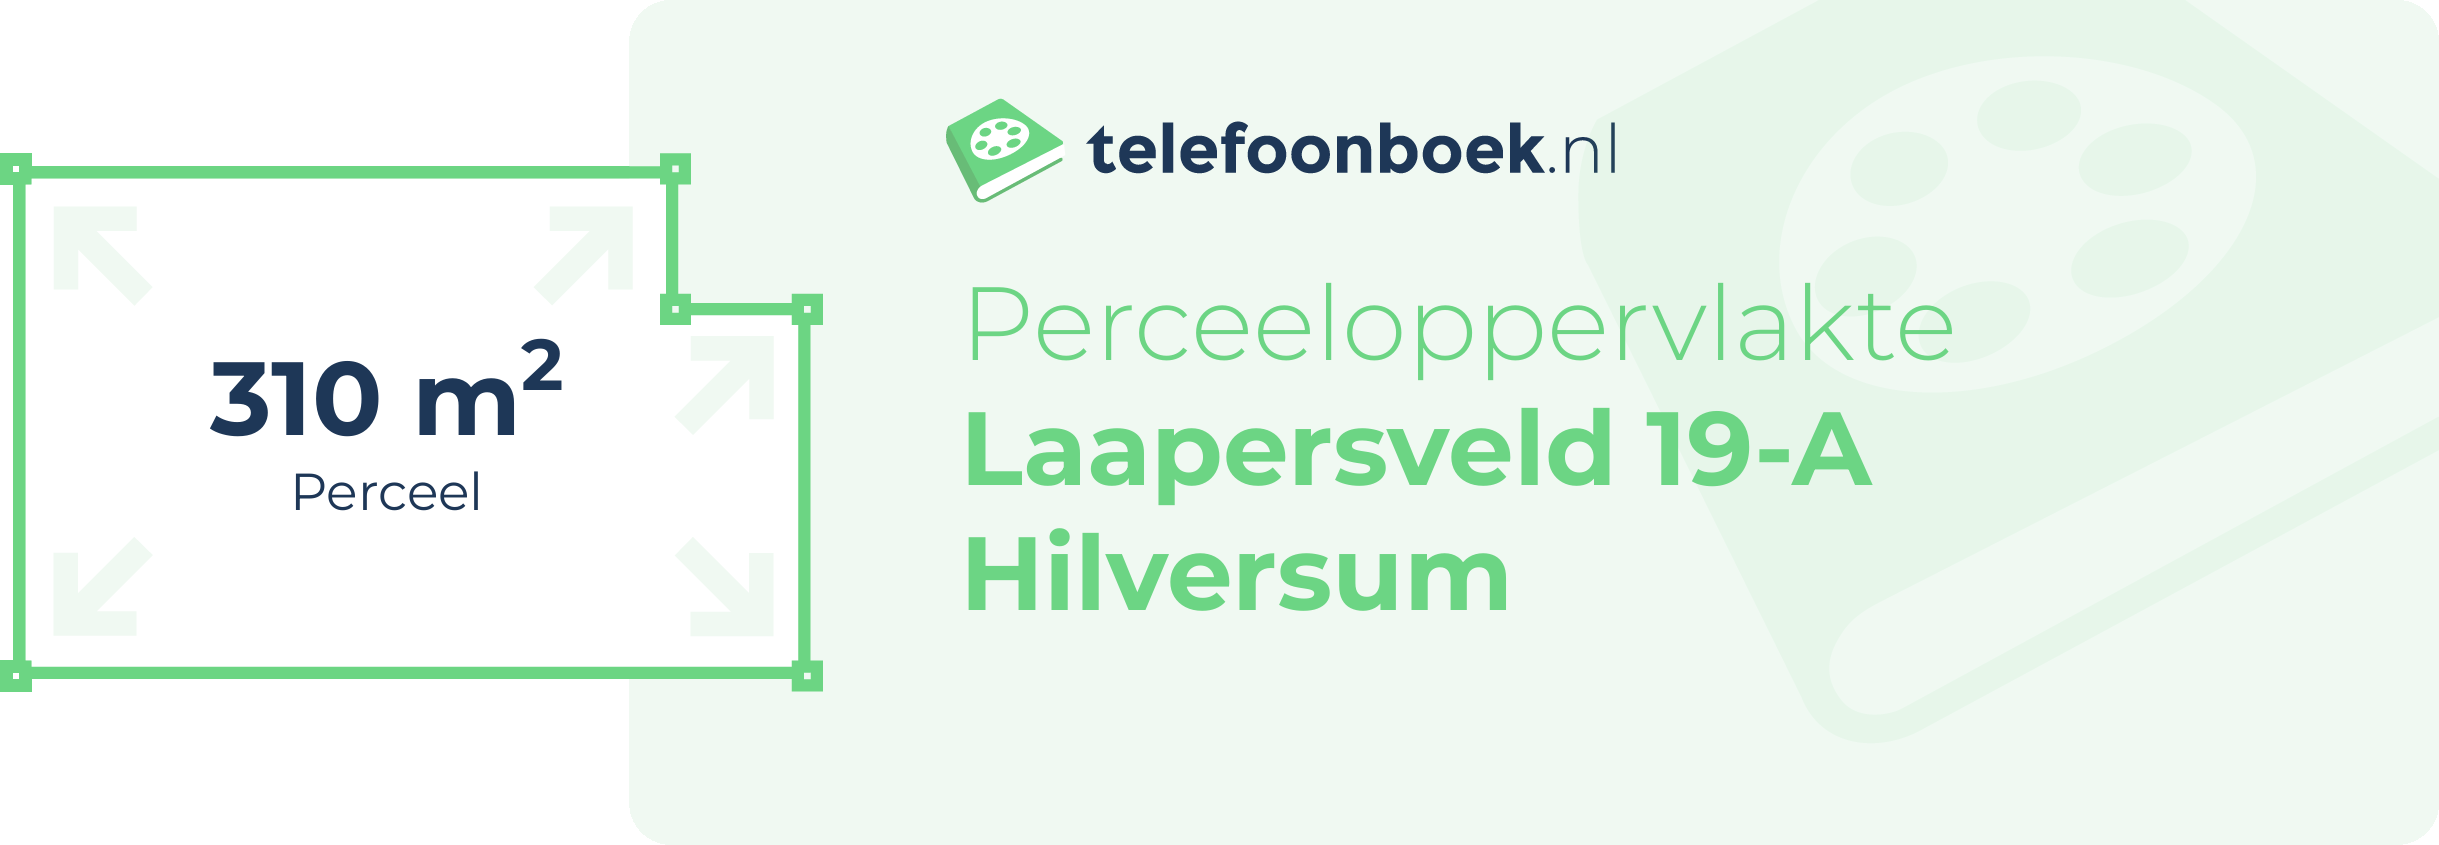 Perceeloppervlakte Laapersveld 19-A Hilversum